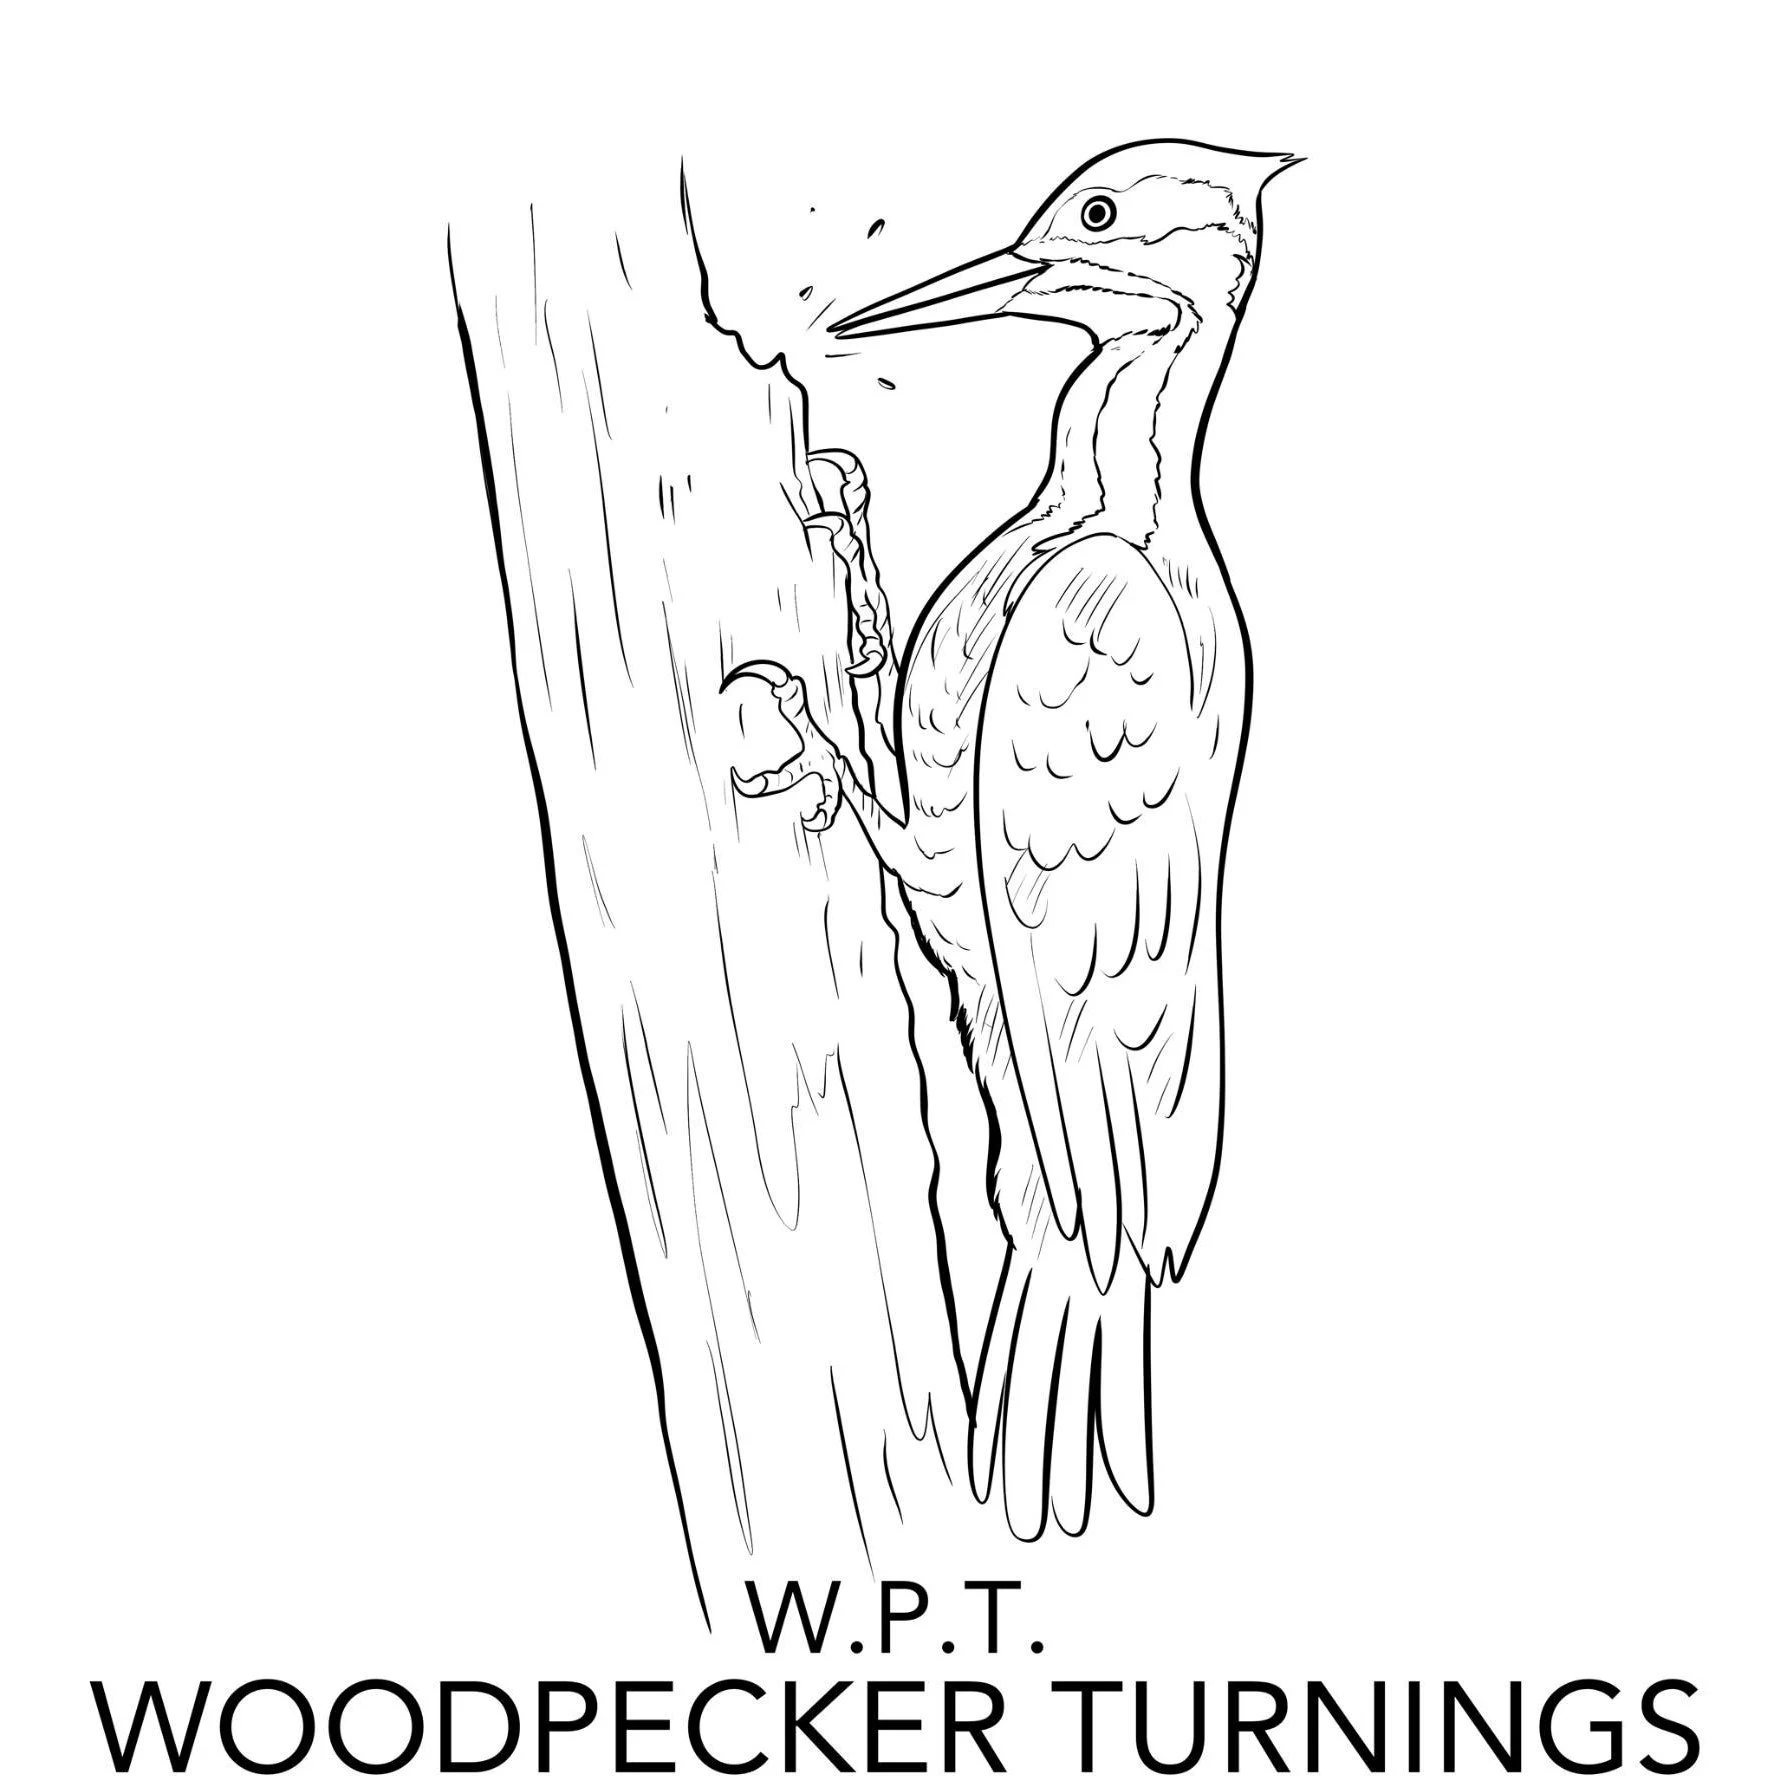 Woodpecker Turnings